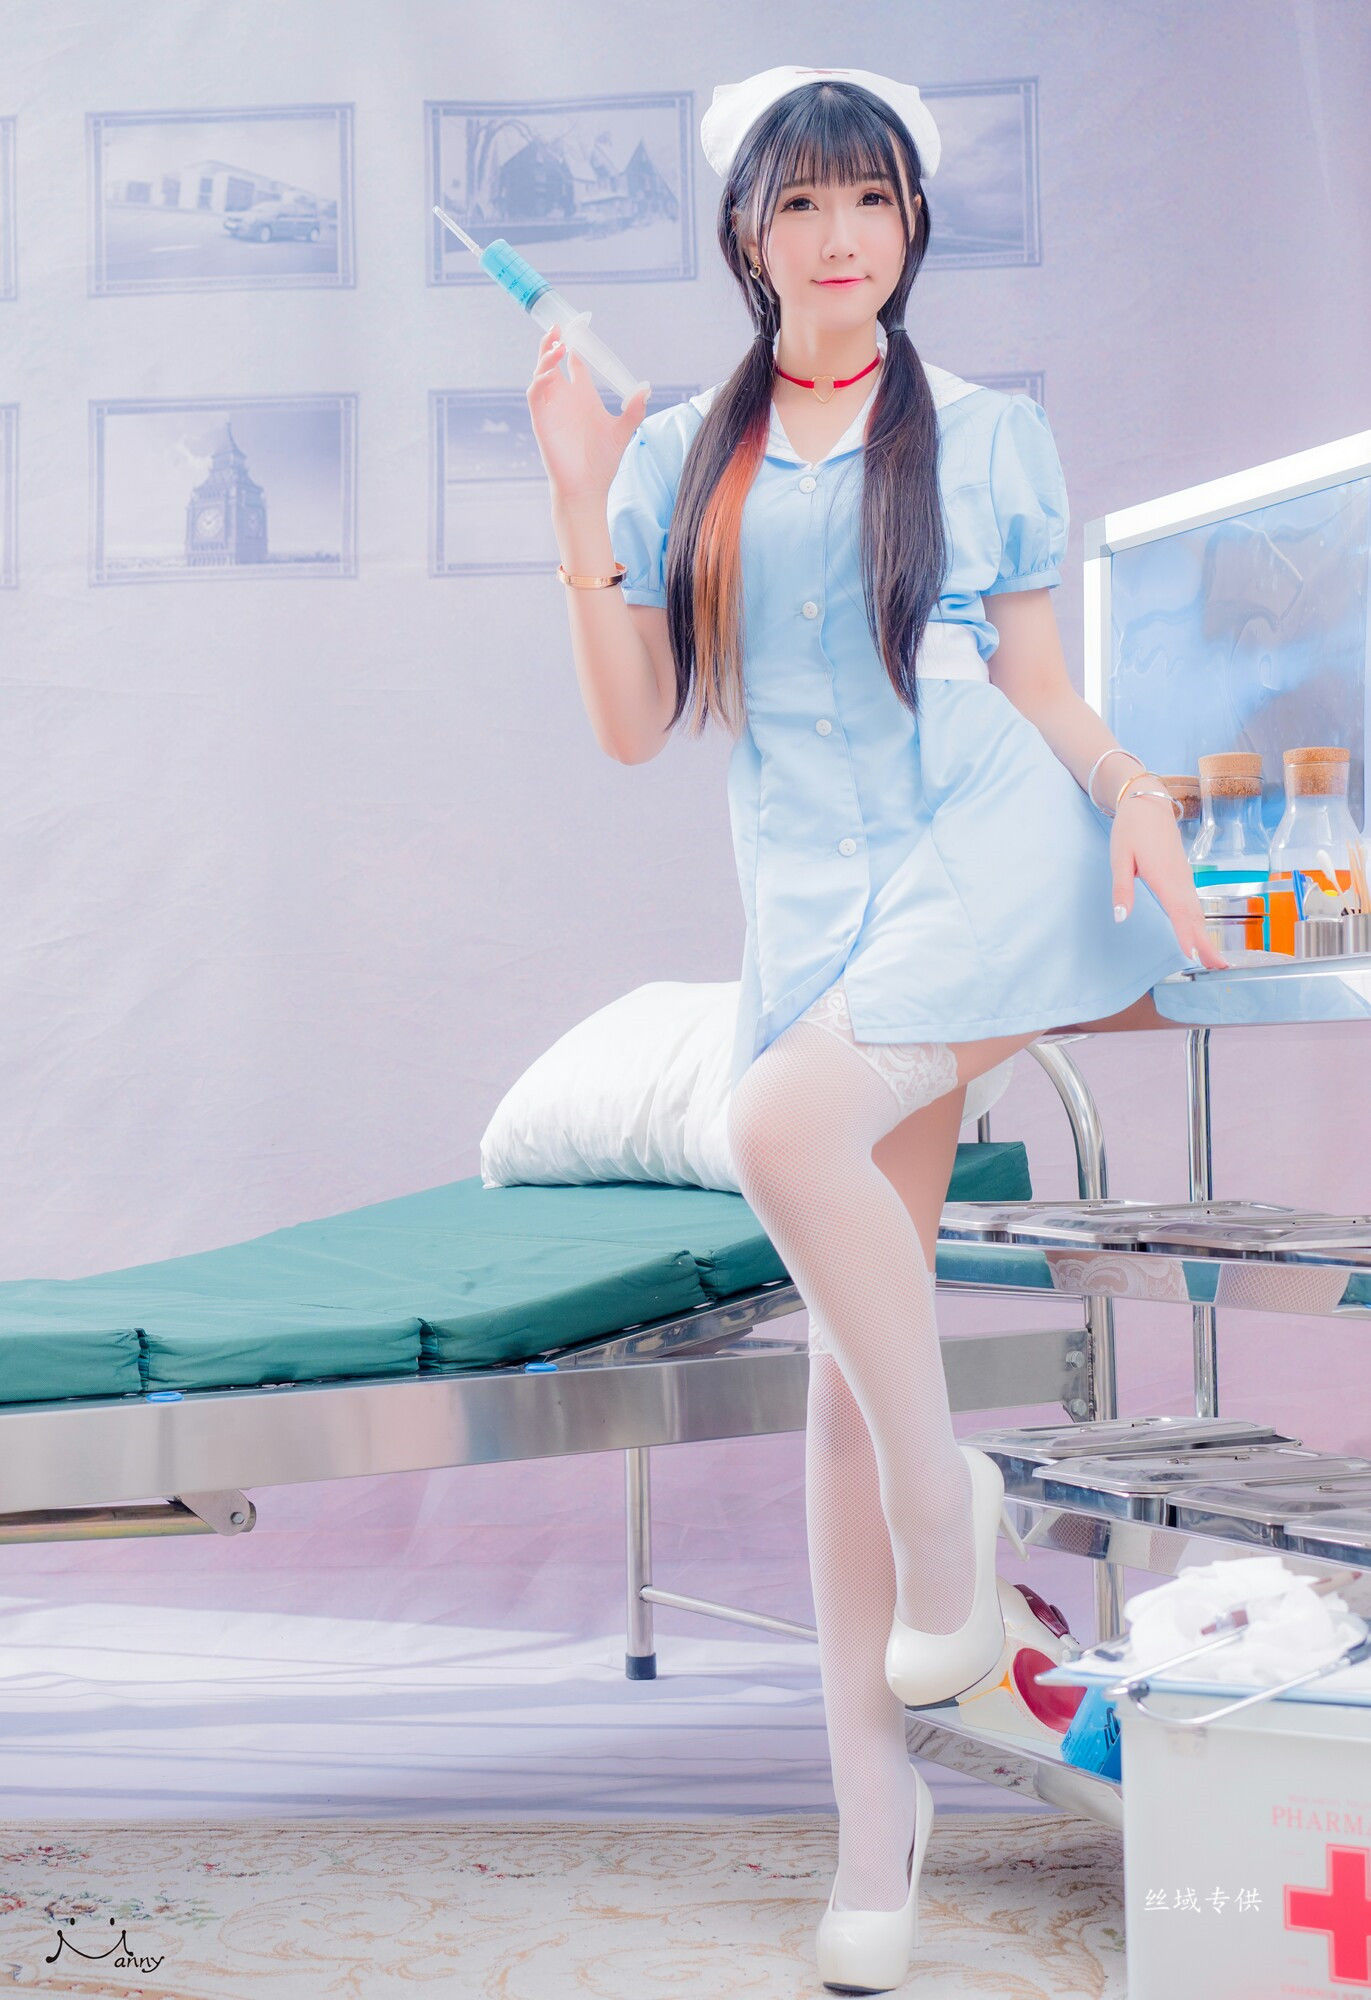 [Taiwan Zhengmei] Qiao Queer “Powder Blue Nurses” Photo Album